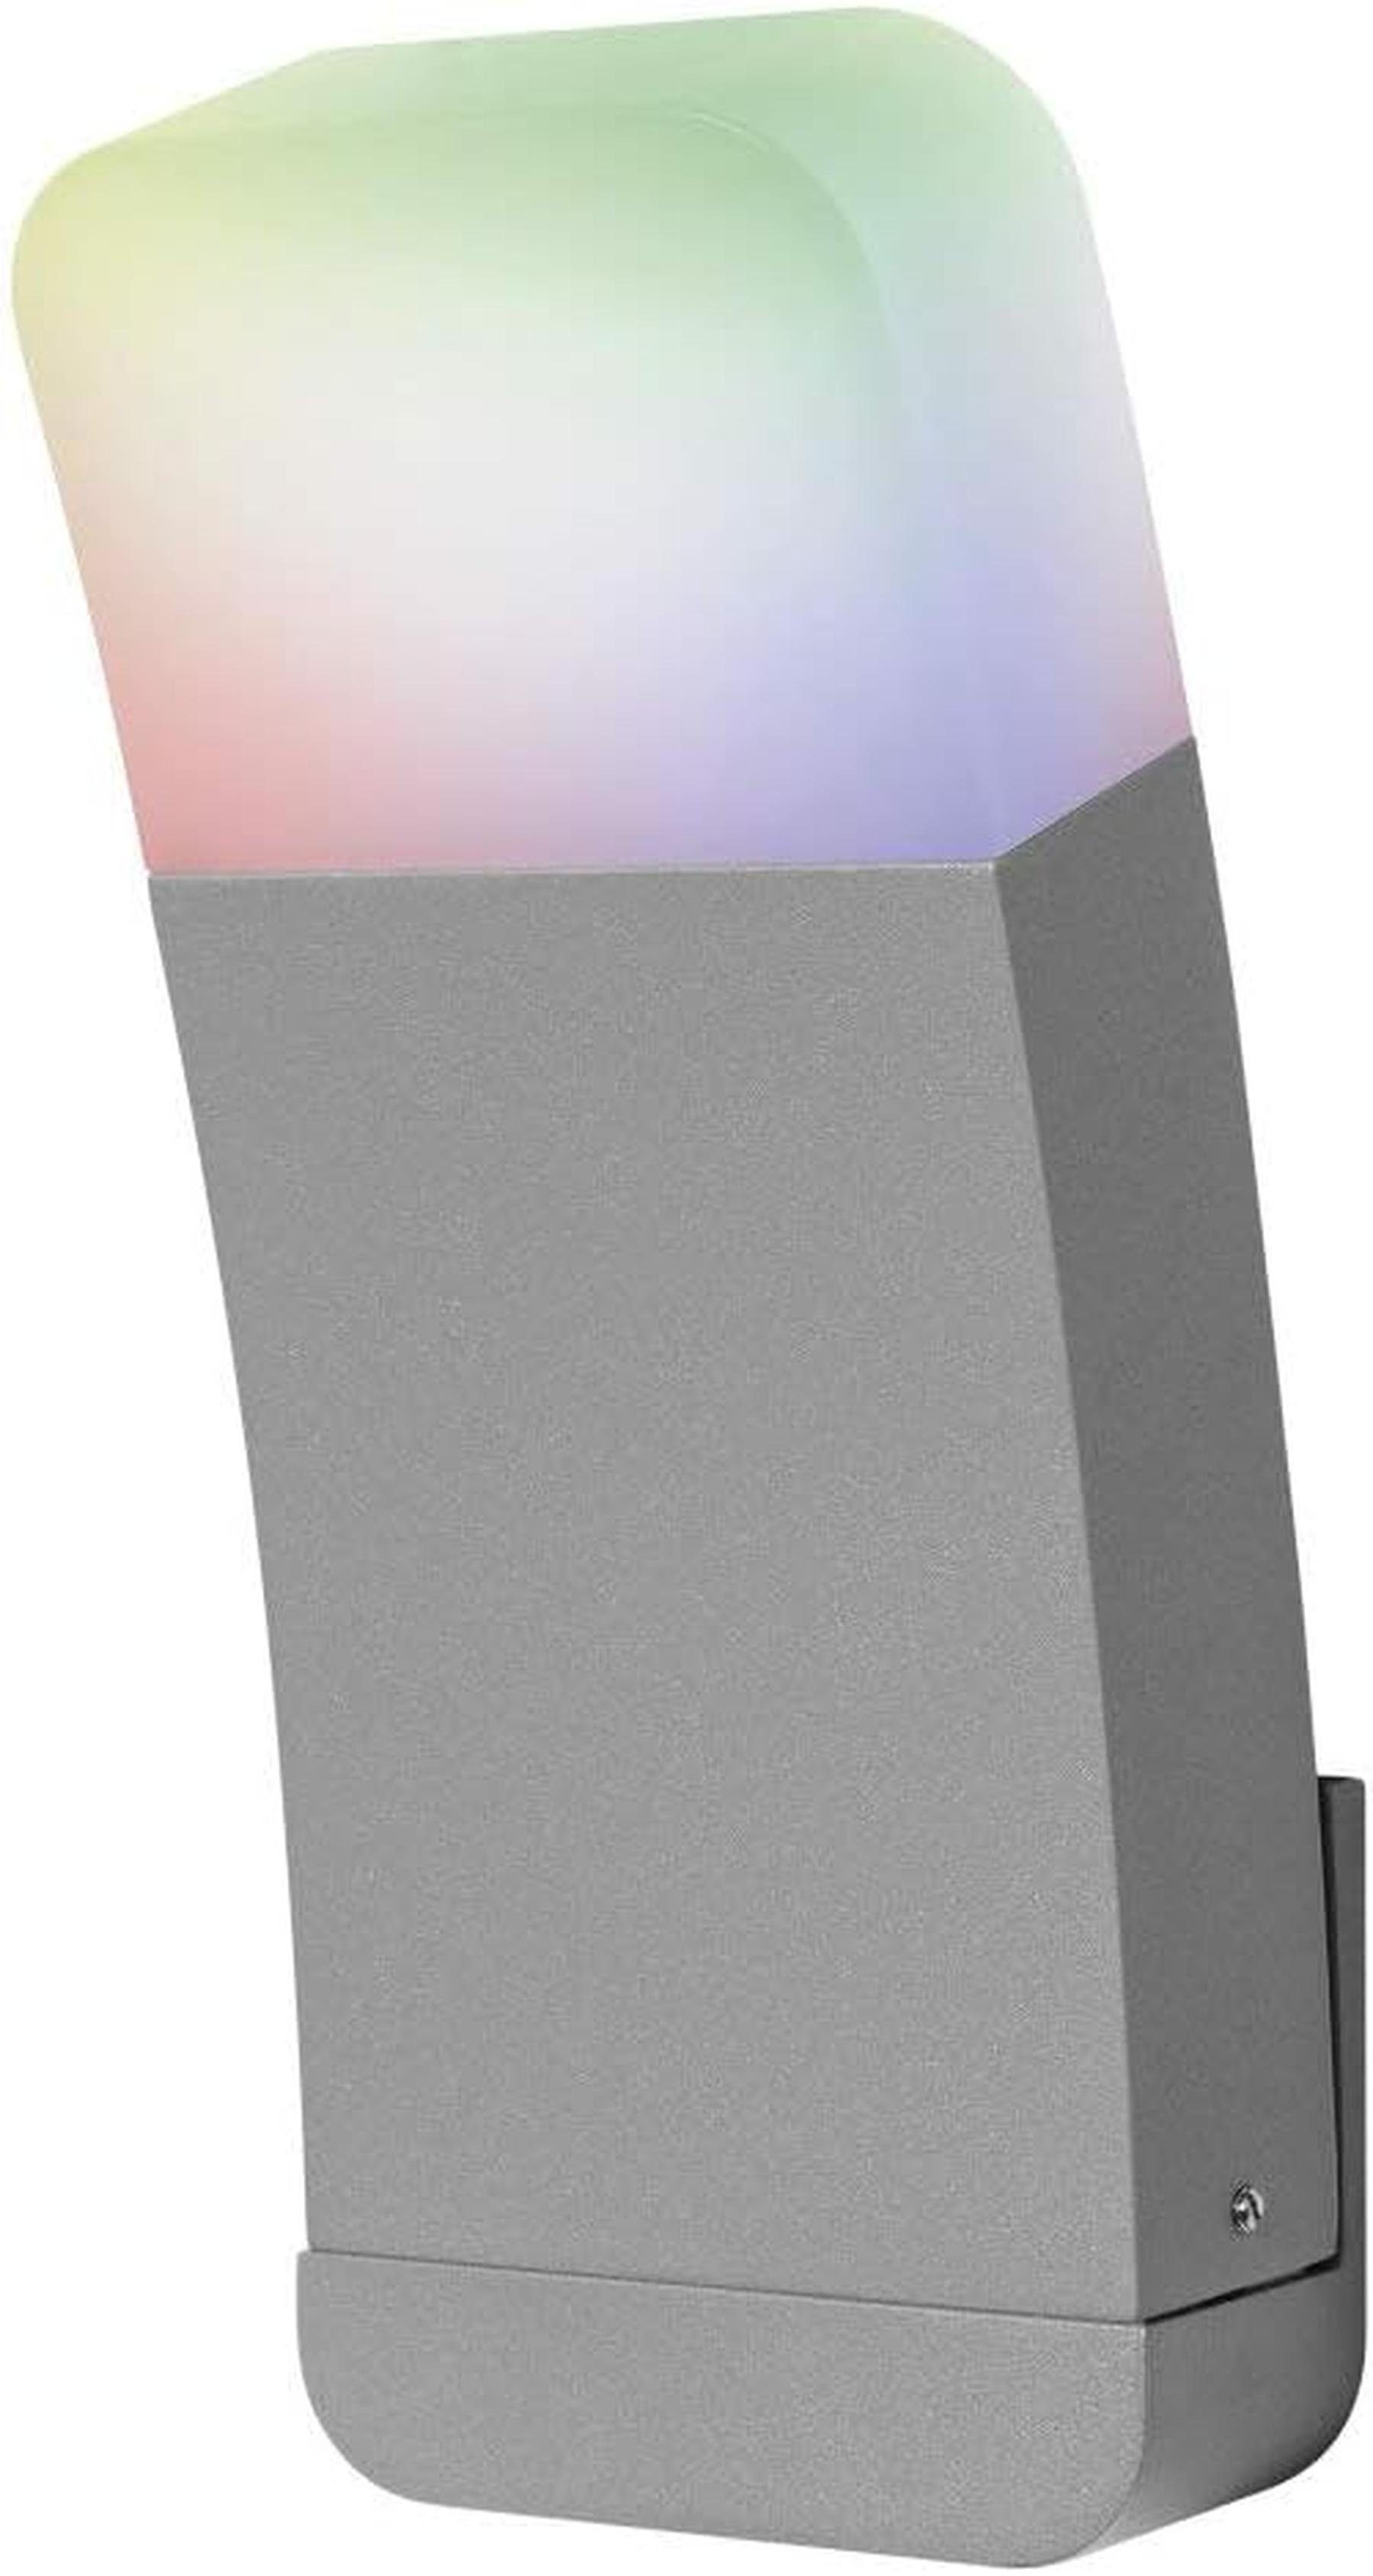 Smarte + für Warmweiß Wand Aussenleuchte WiFi mit Ledvance Dimmbar Technologie, Außen-Wandleuchte LED die Ledvance RGB,